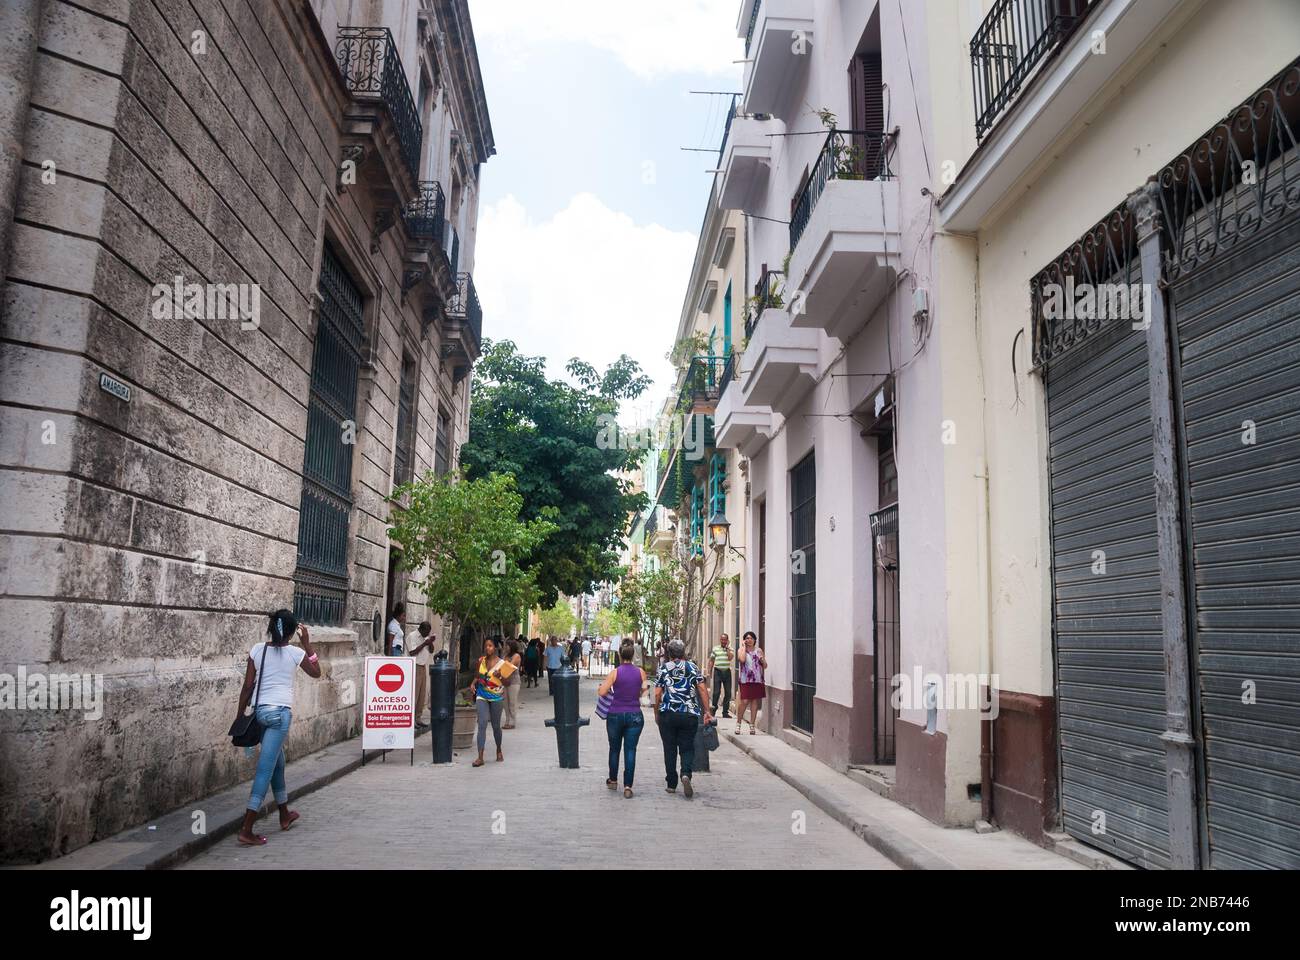 Una scena di strada del centro nella parte vecchia del centro di Havana Cuba con turisti e locali ad ammirare gli edifici coloniali restaurati e le stradine strette. Foto Stock